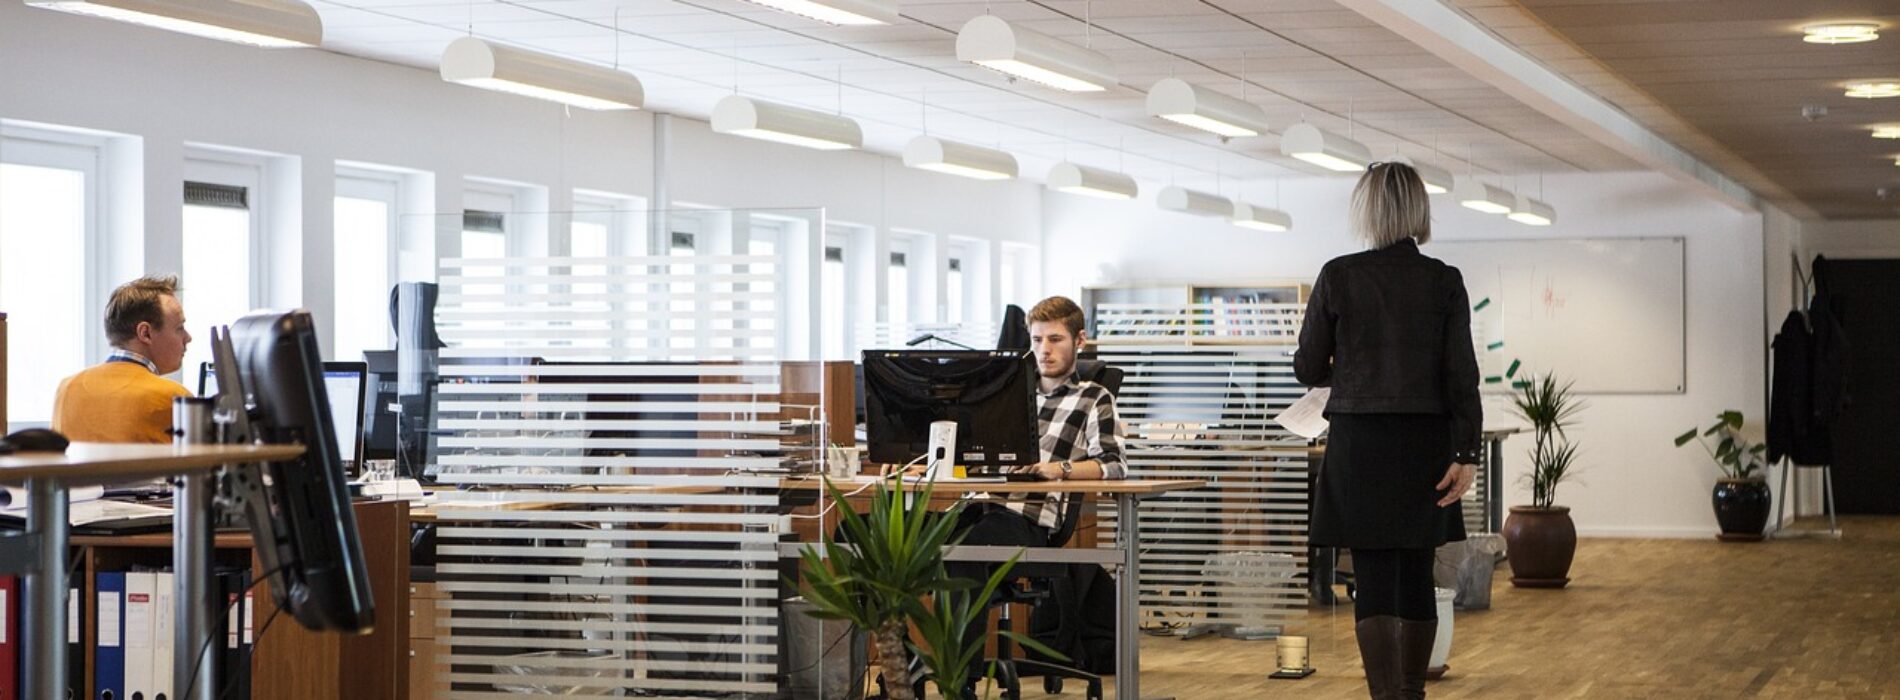 Pracodawcy inwestują w biura, by ściągnąć pracowników z pracy zdalnej. Atrakcyjna przestrzeń i lokalizacja mogą w tym pomóc